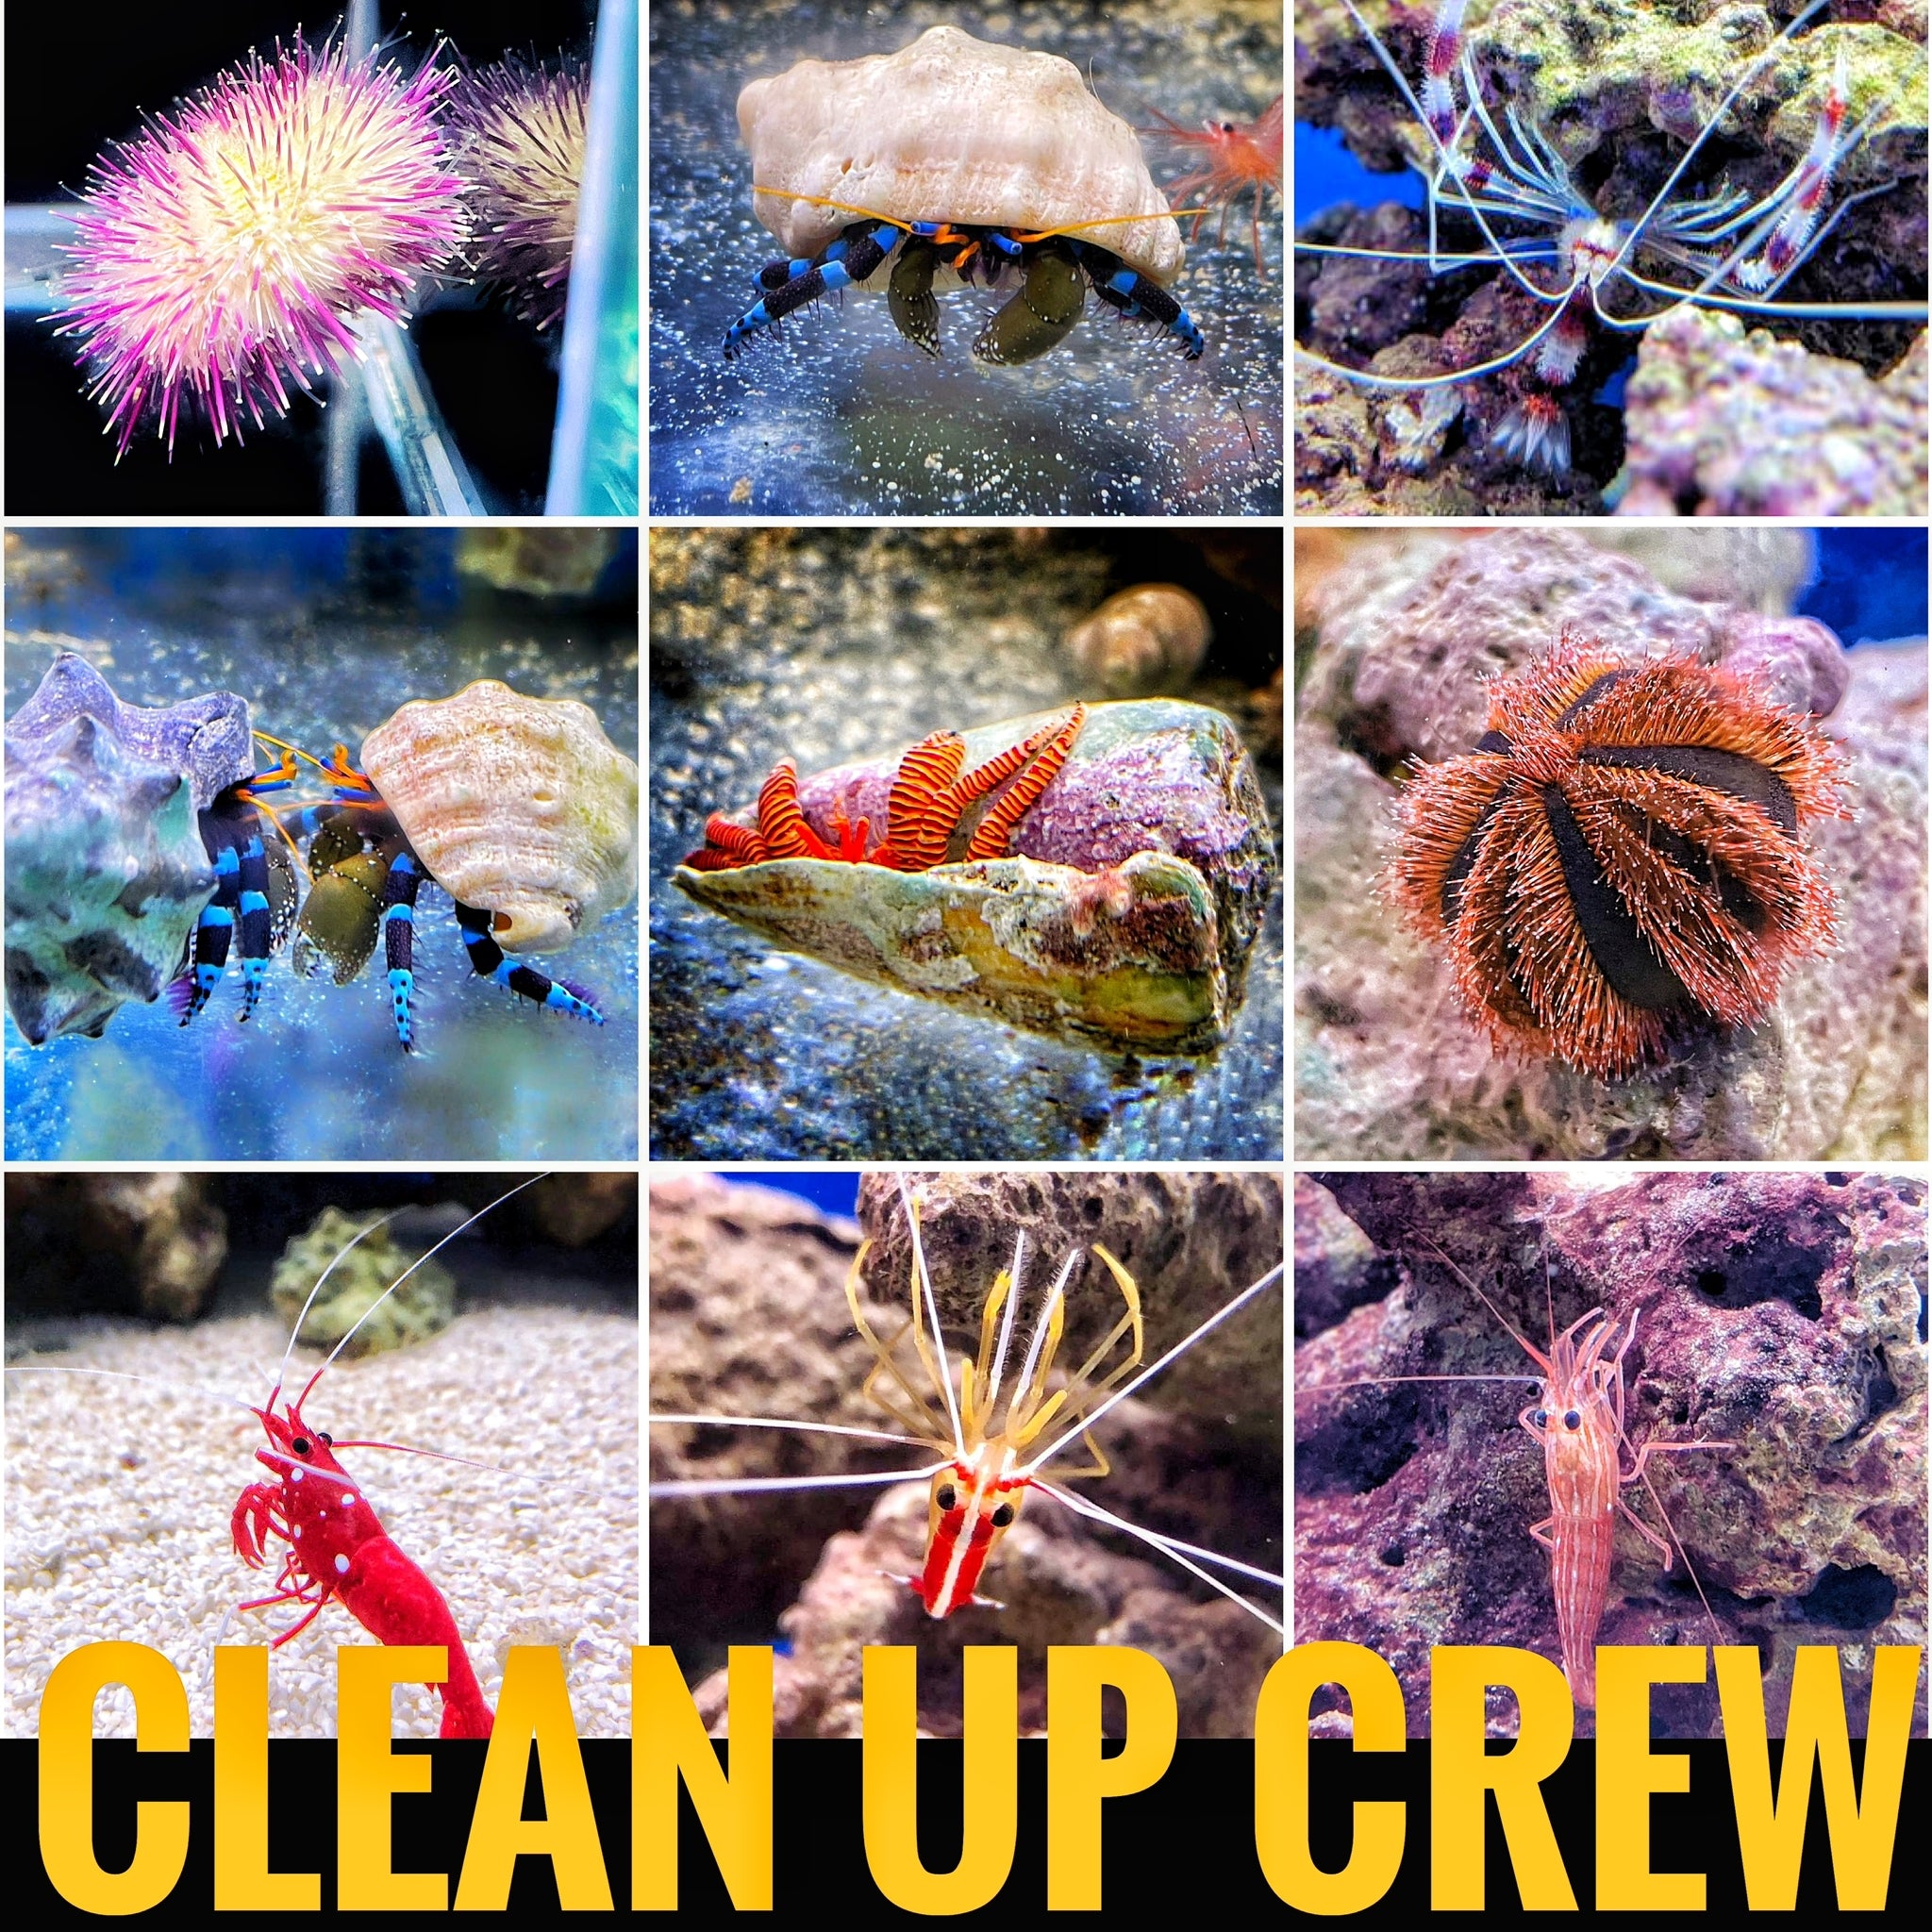 Clean up crew in a reef aquarium